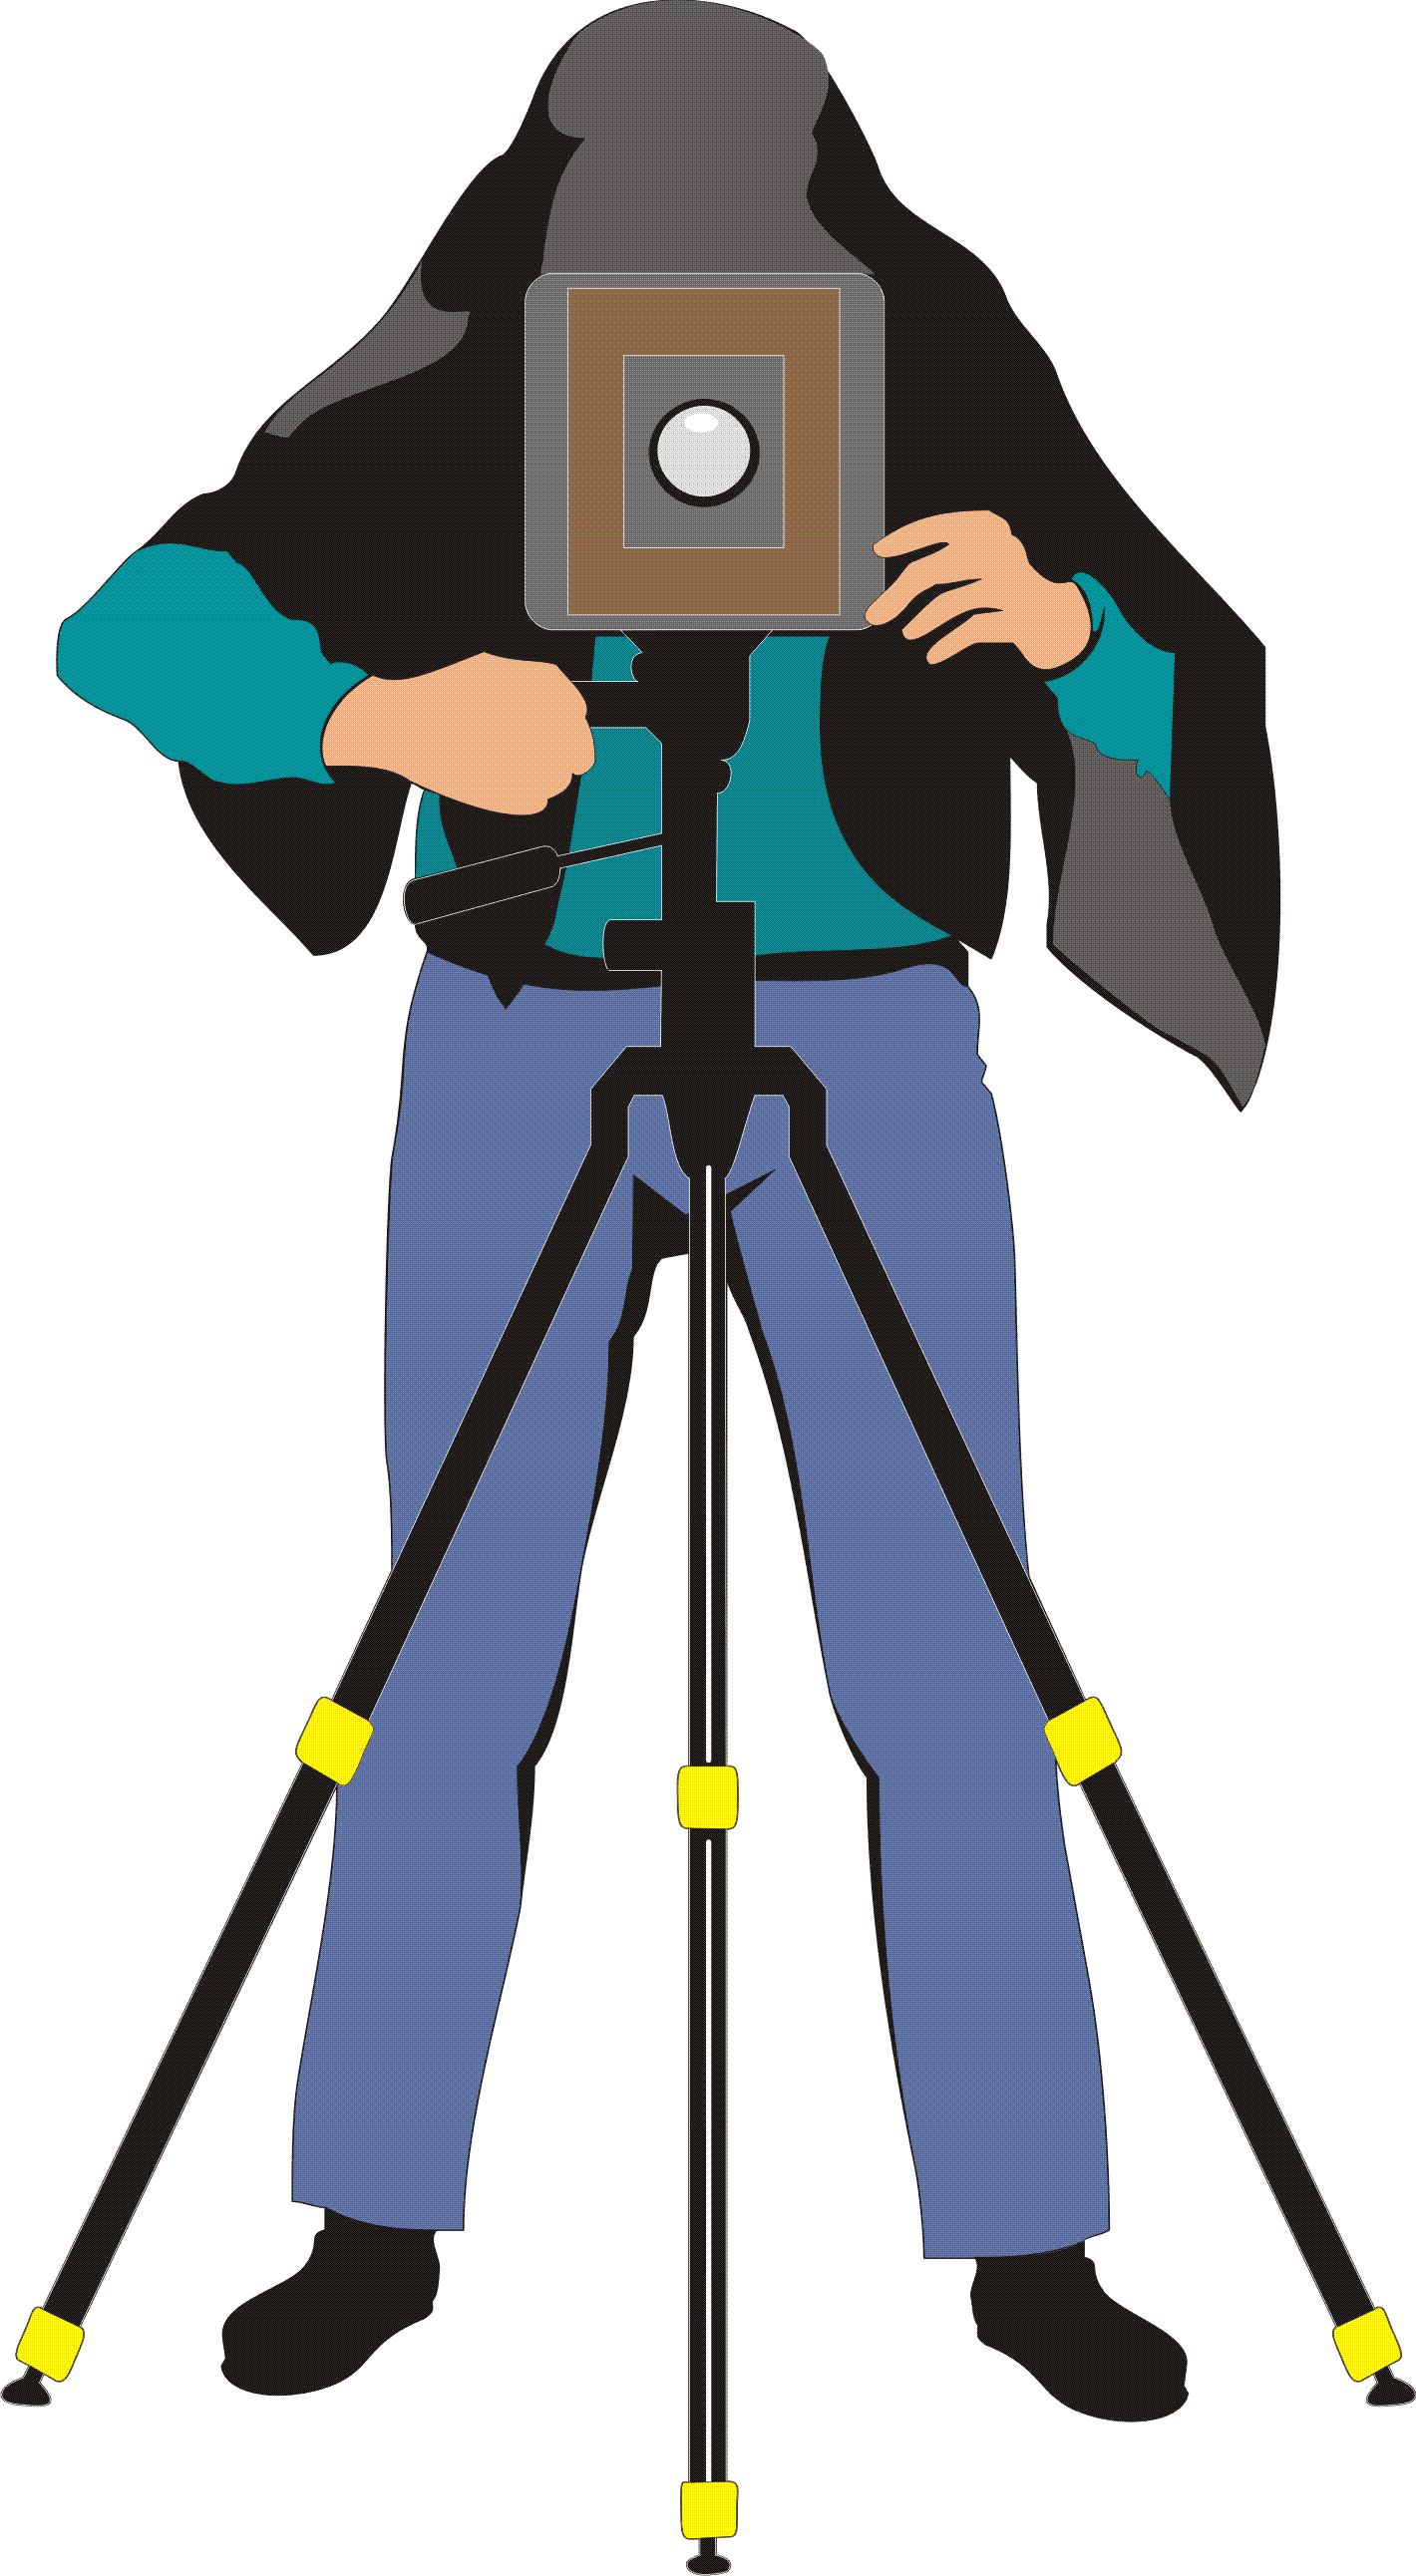 Kameraman